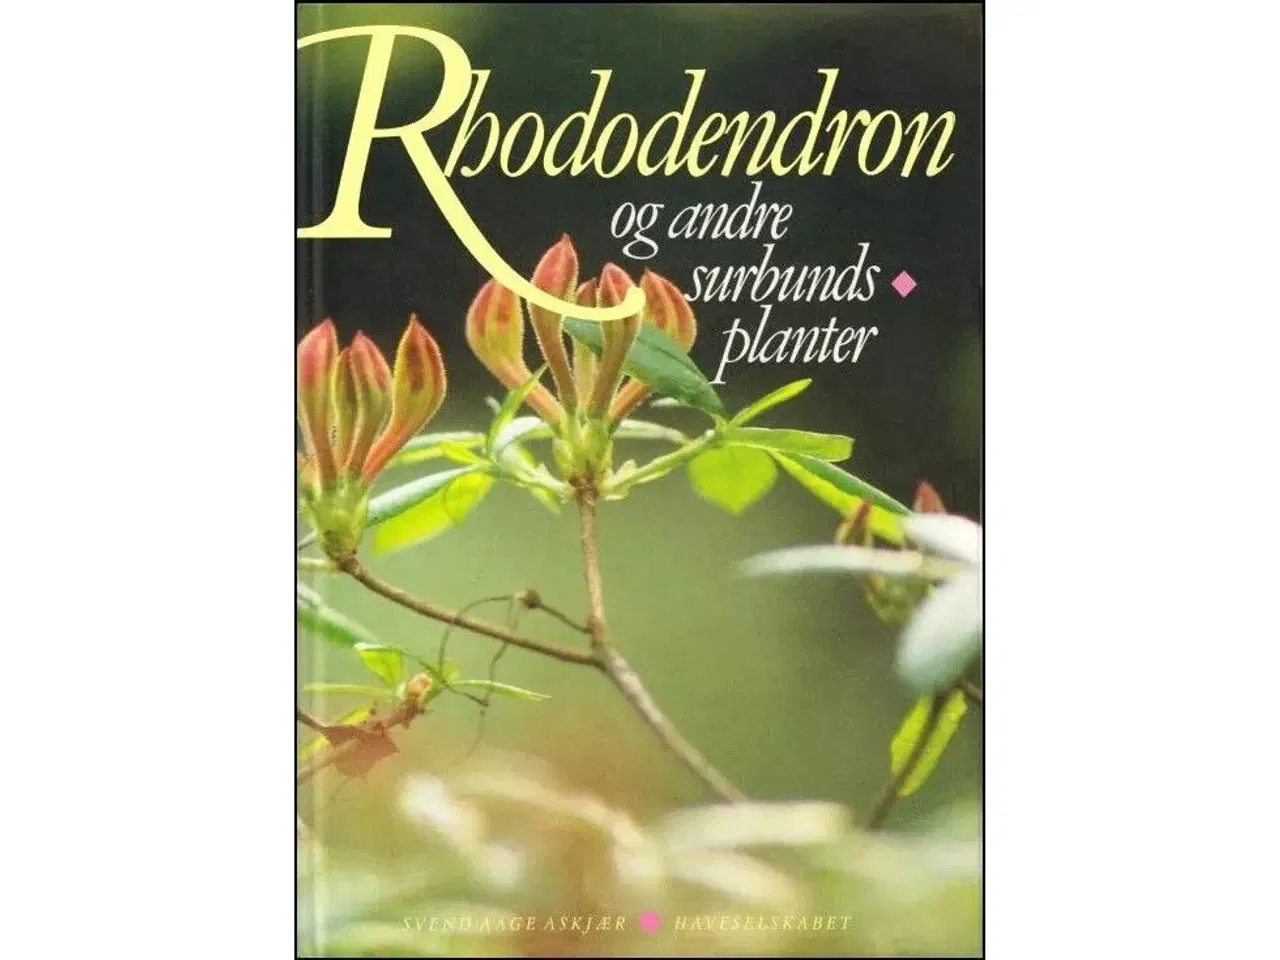 Billede 1 - Rhododendron og andre Surbundsplanter